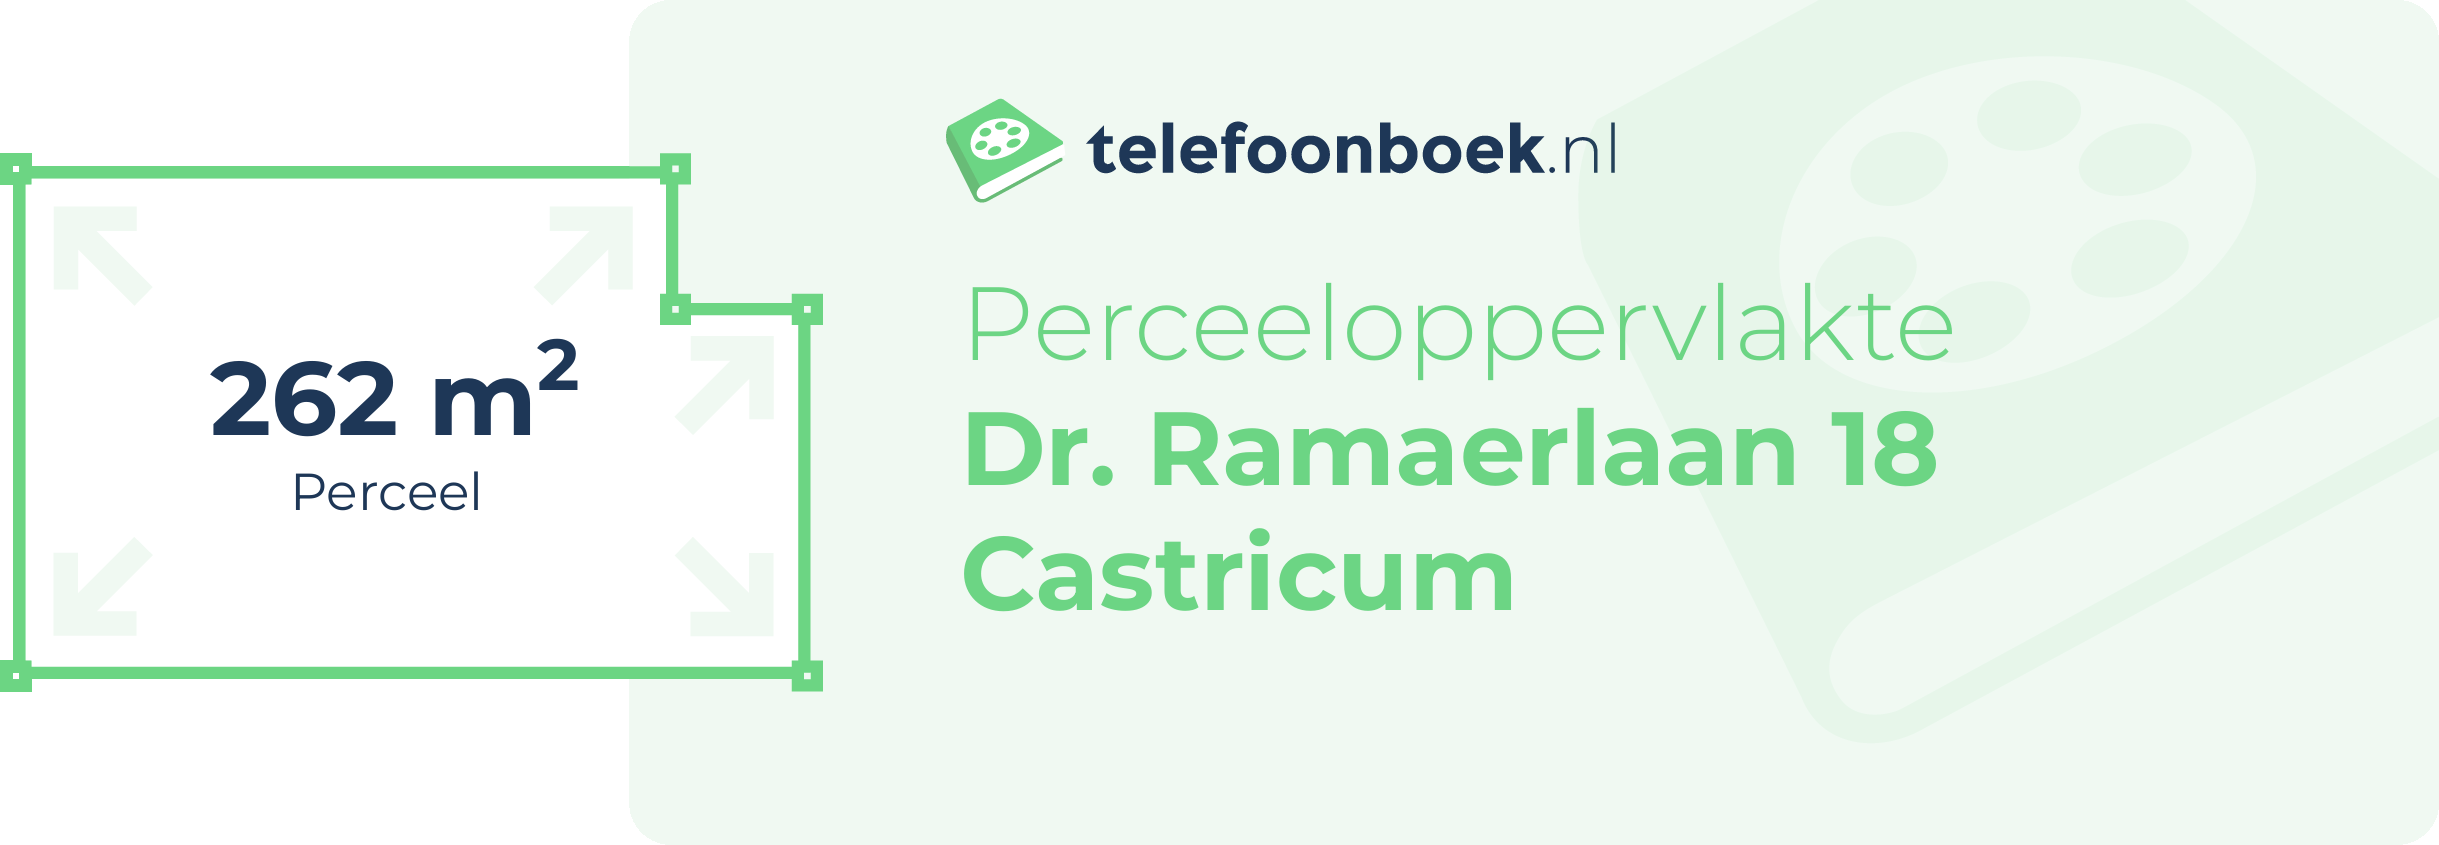 Perceeloppervlakte Dr. Ramaerlaan 18 Castricum